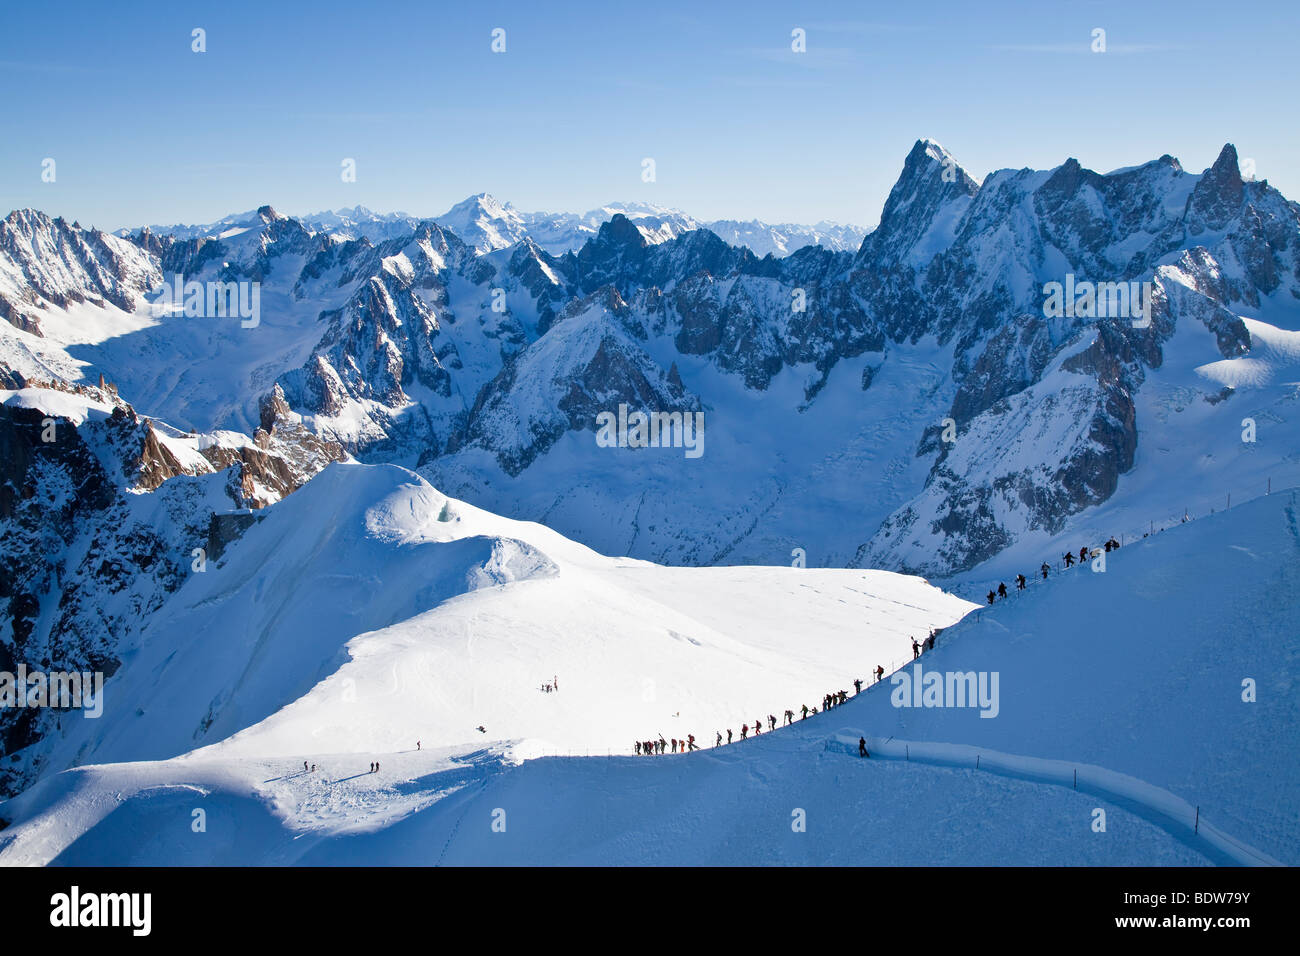 Skifahrer, Vallee Blanche anständige, Aiguille du Midi (3842M), Chamonix-Mont-Blanc, Haute-Savoie, Französische Alpen, Frankreich Stockfoto